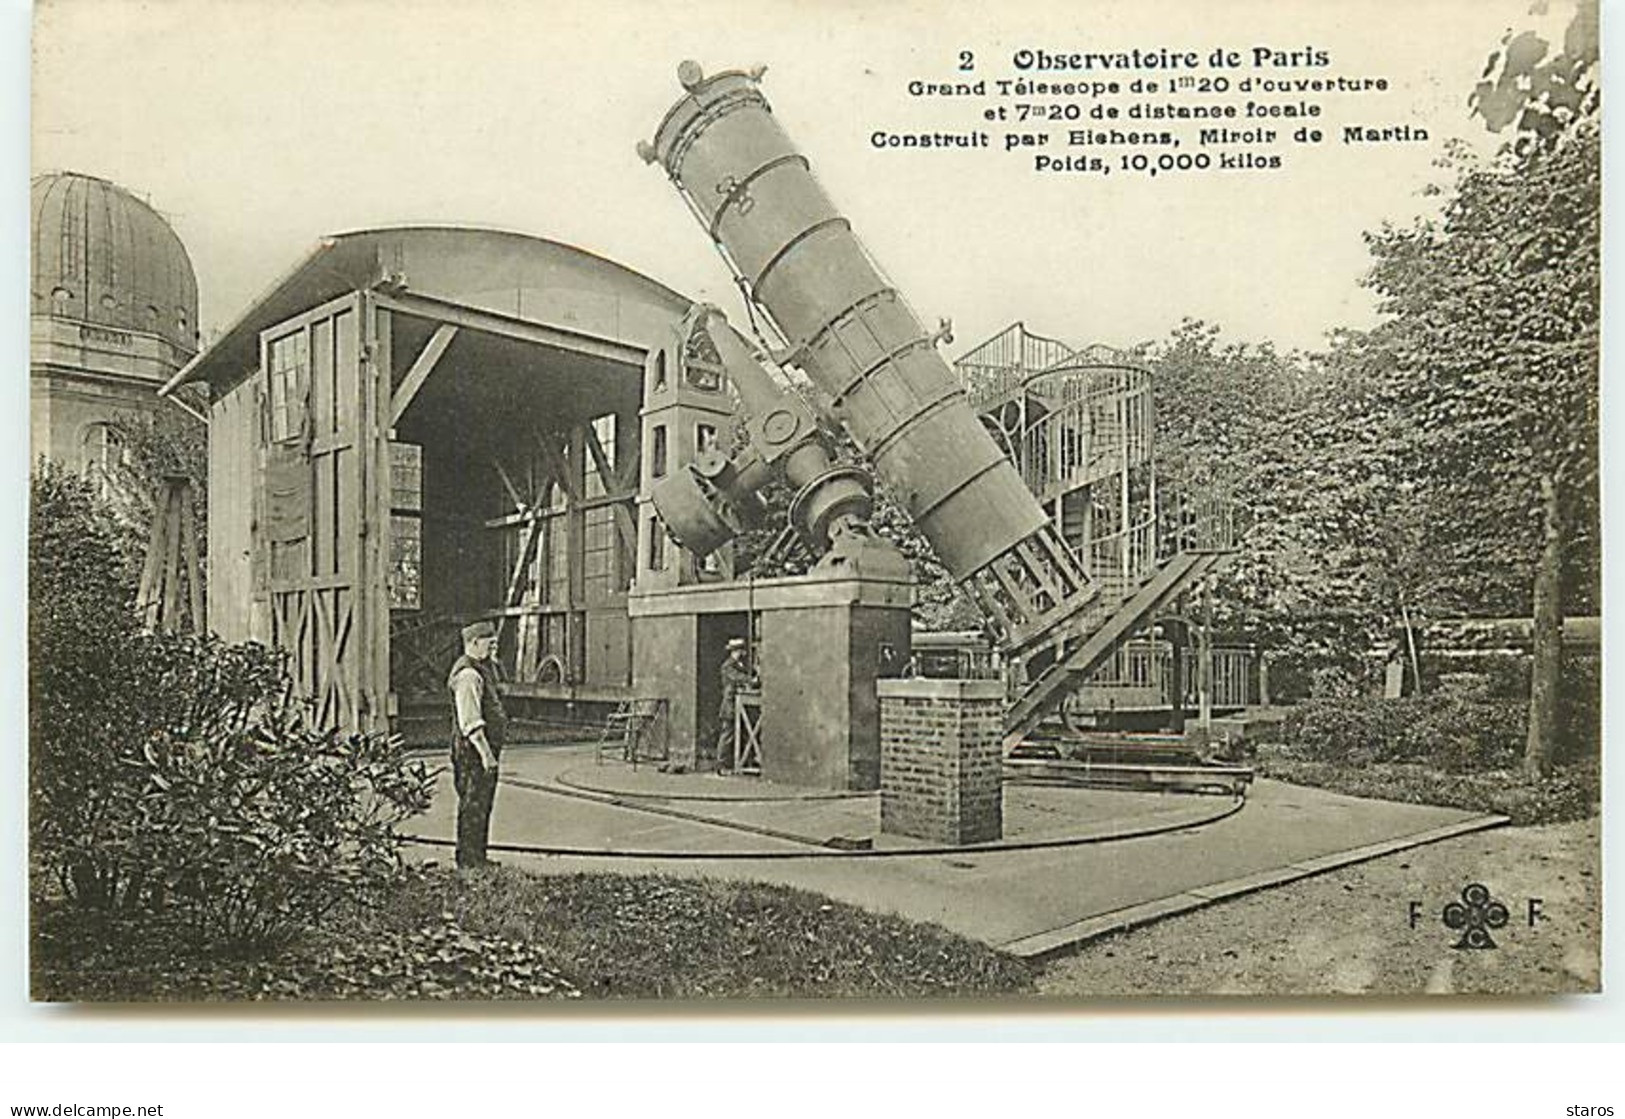 Observatoire De Paris N°2 - Fleury - Grand Téléscope De 1m20 D'ouverture Et 7m20 De Distance Focale - Astronomia